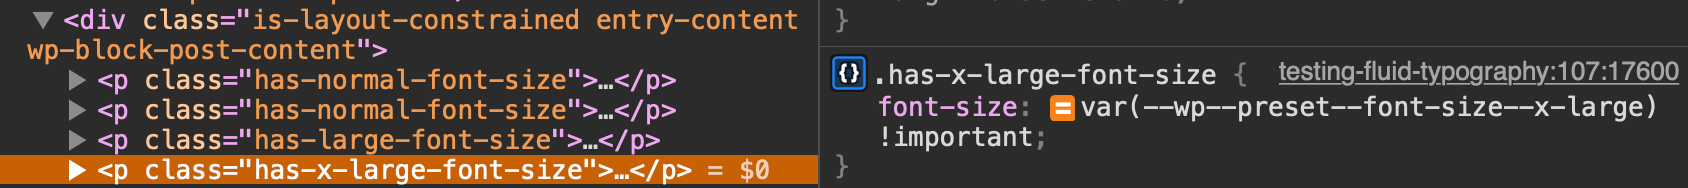 Anzeigen der benutzerdefinierten Eigenschaft „font-size“ für die Schriftarteinstellung „Extra Large“ in DevTools.